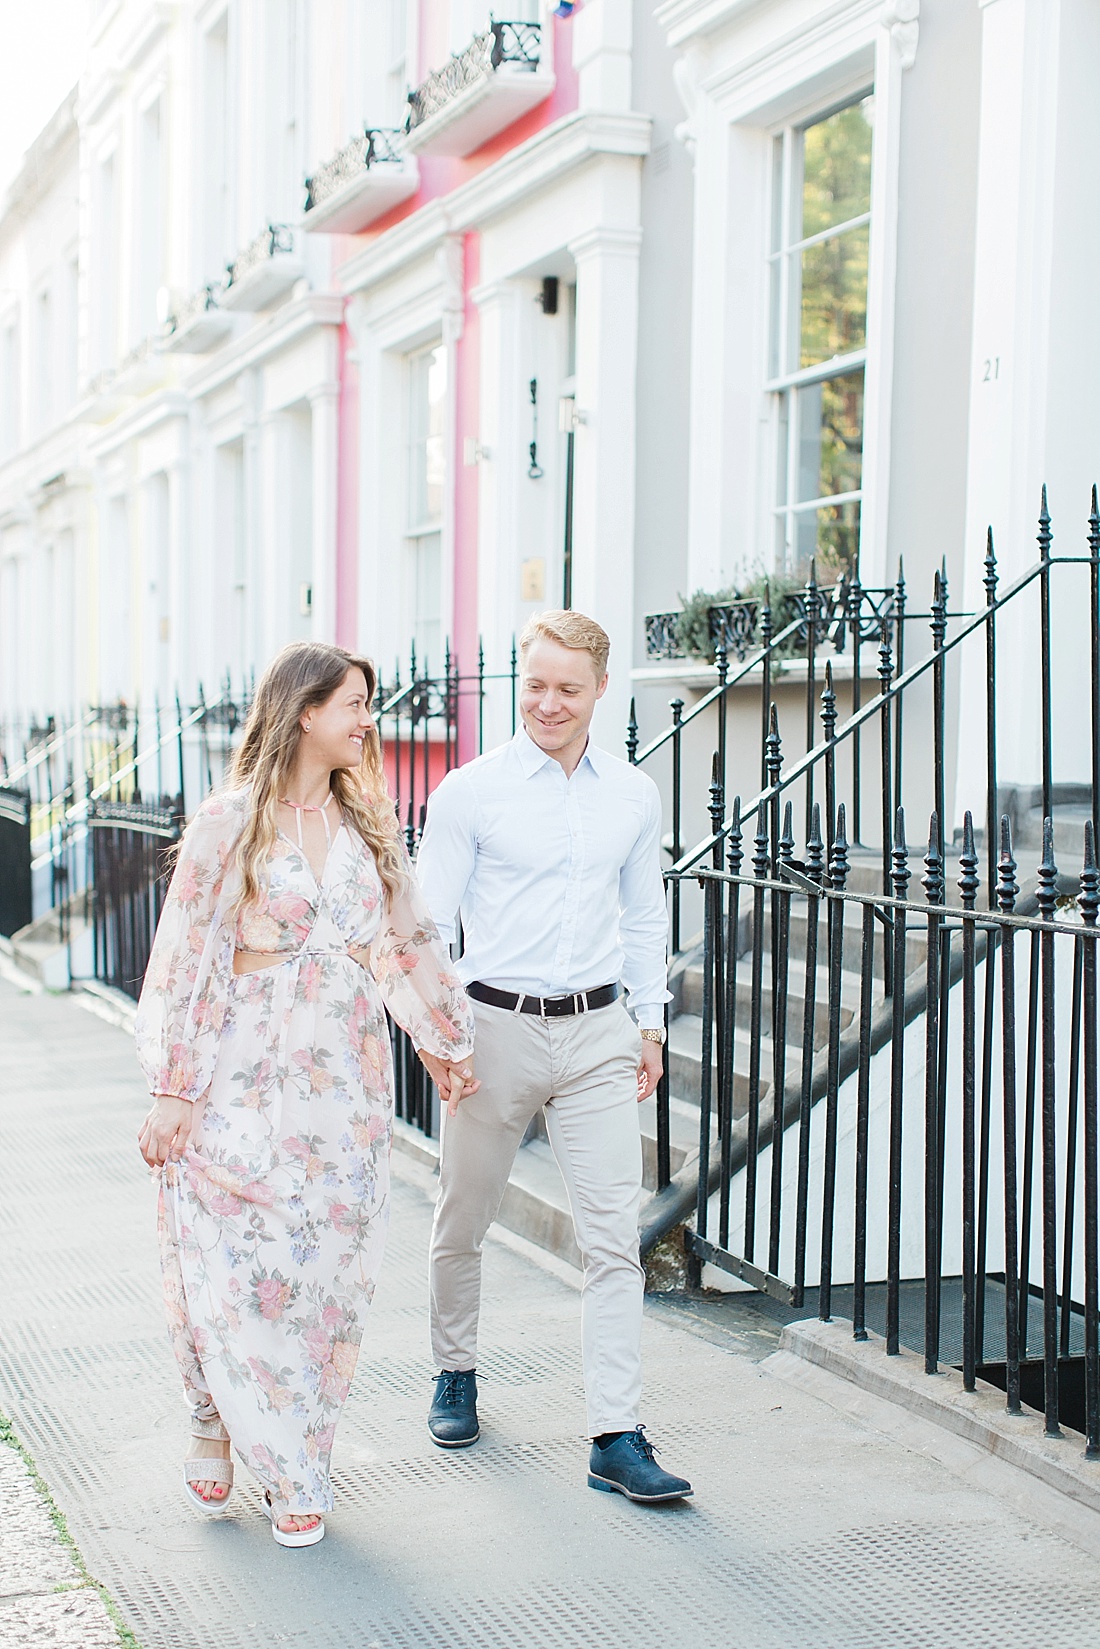 Notting Hill engagement & portrait photographer | Abby Grace